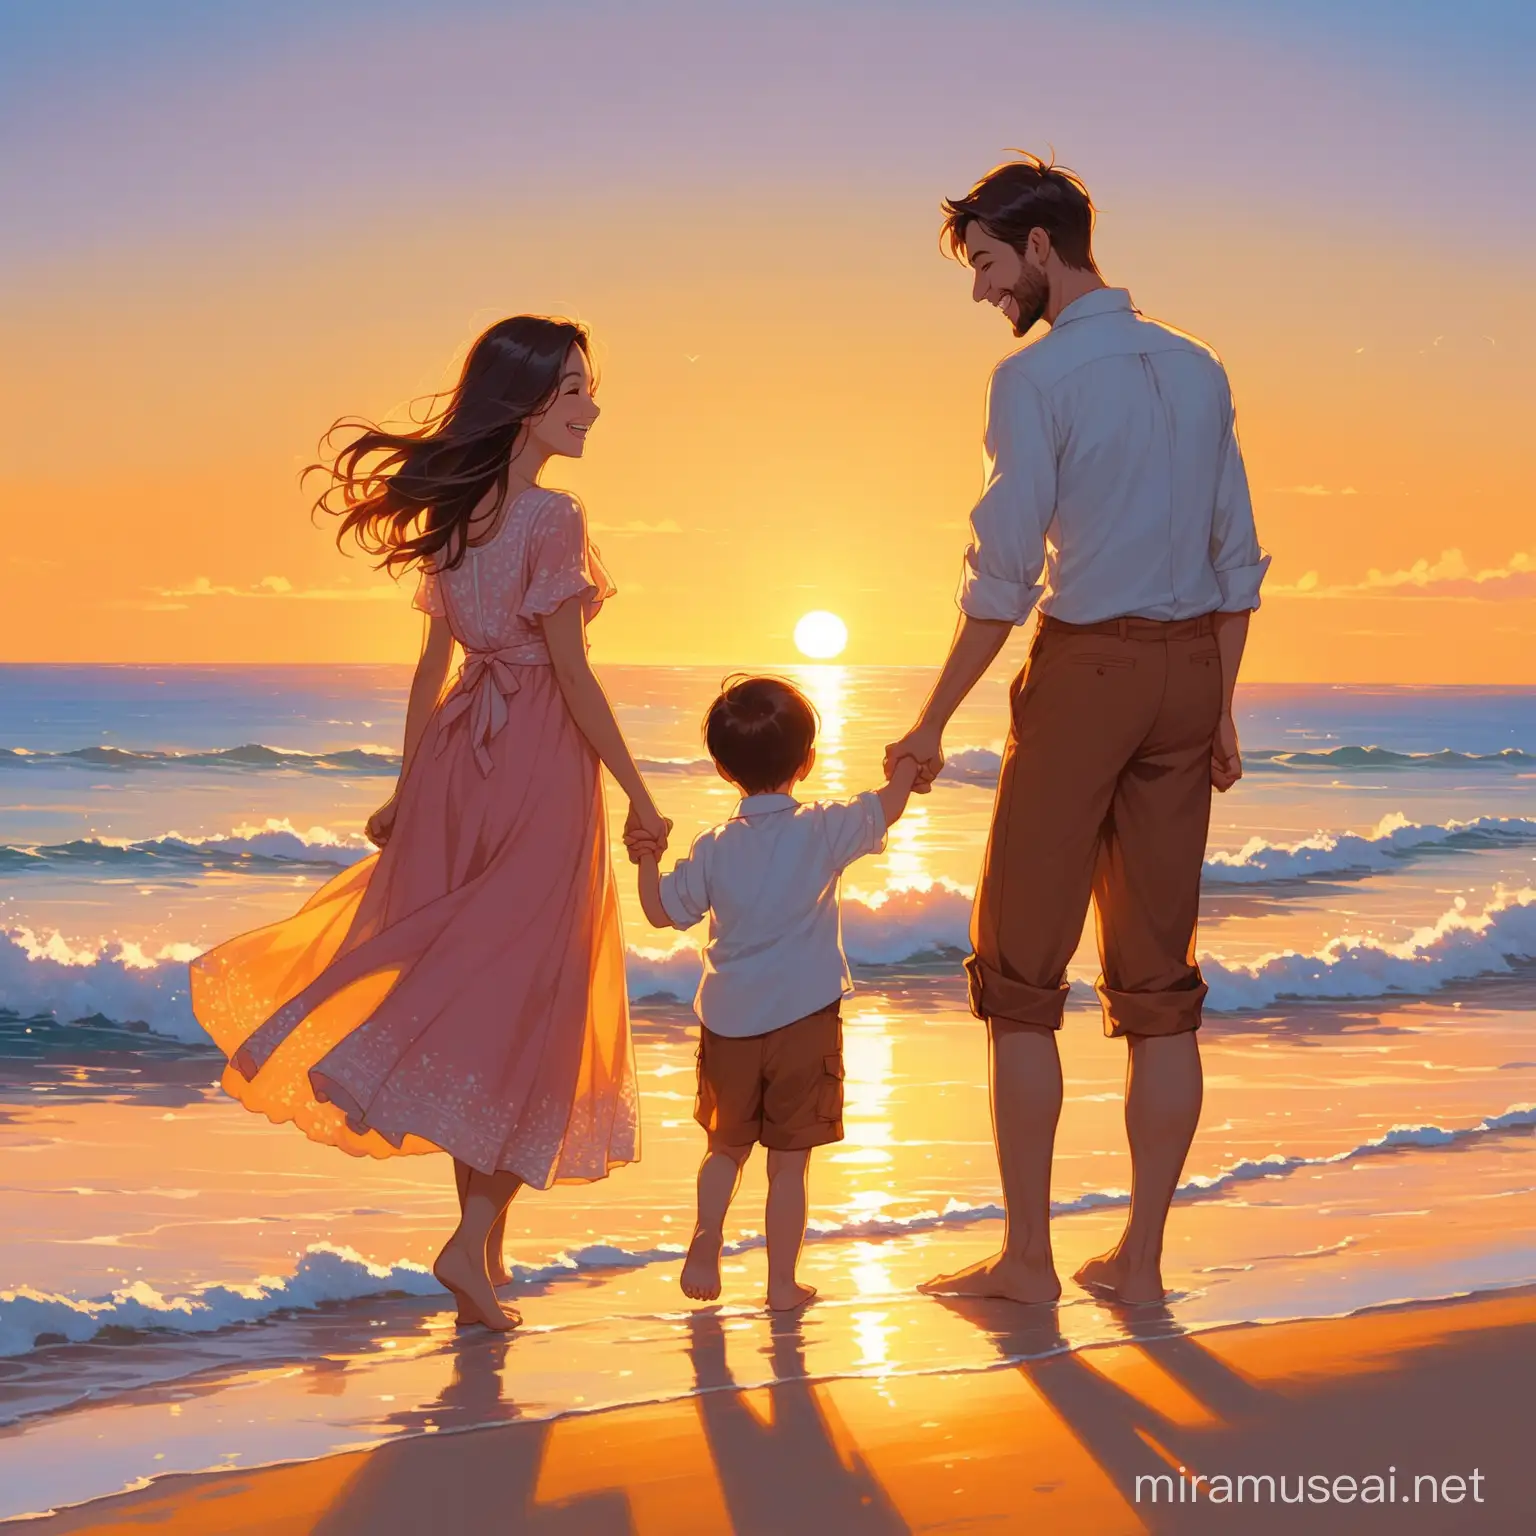 Joyful Family Greeting Sunrise on Ocean Shore in Elegant Attire